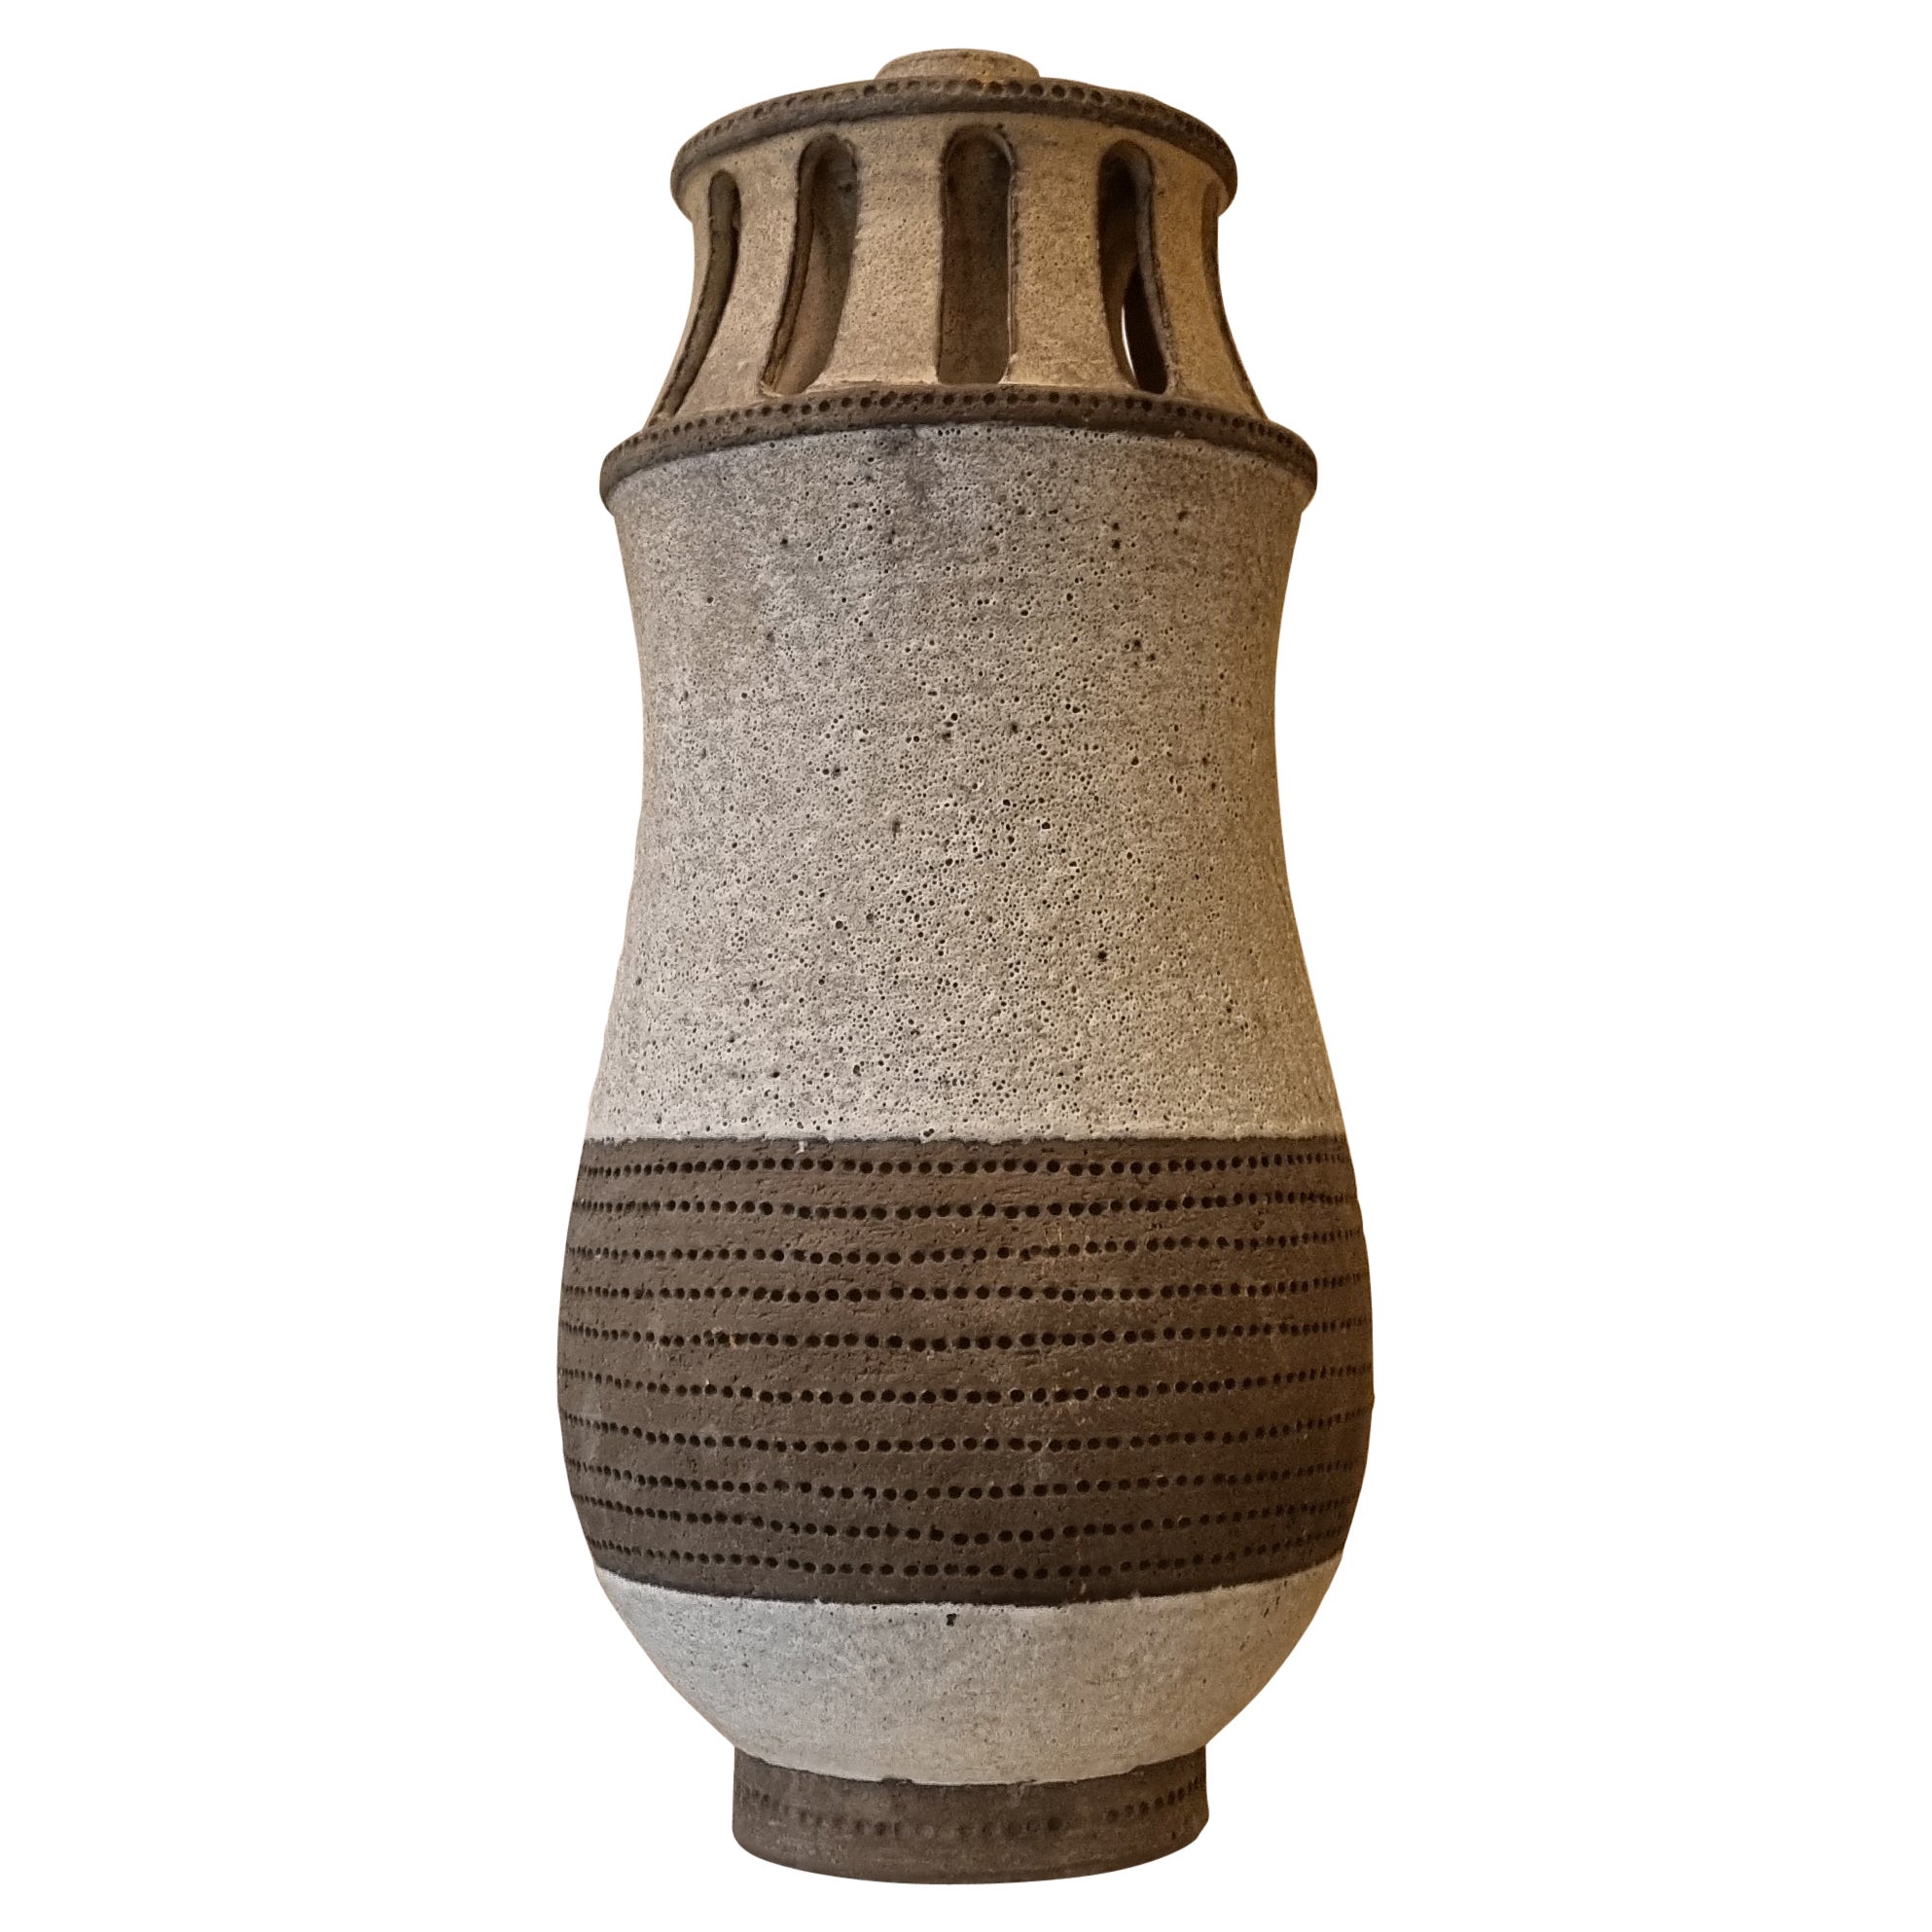 Vase mit Lampenhalter von Aldo Londi für Ceramiche Bitossi, 1970 Signiert.